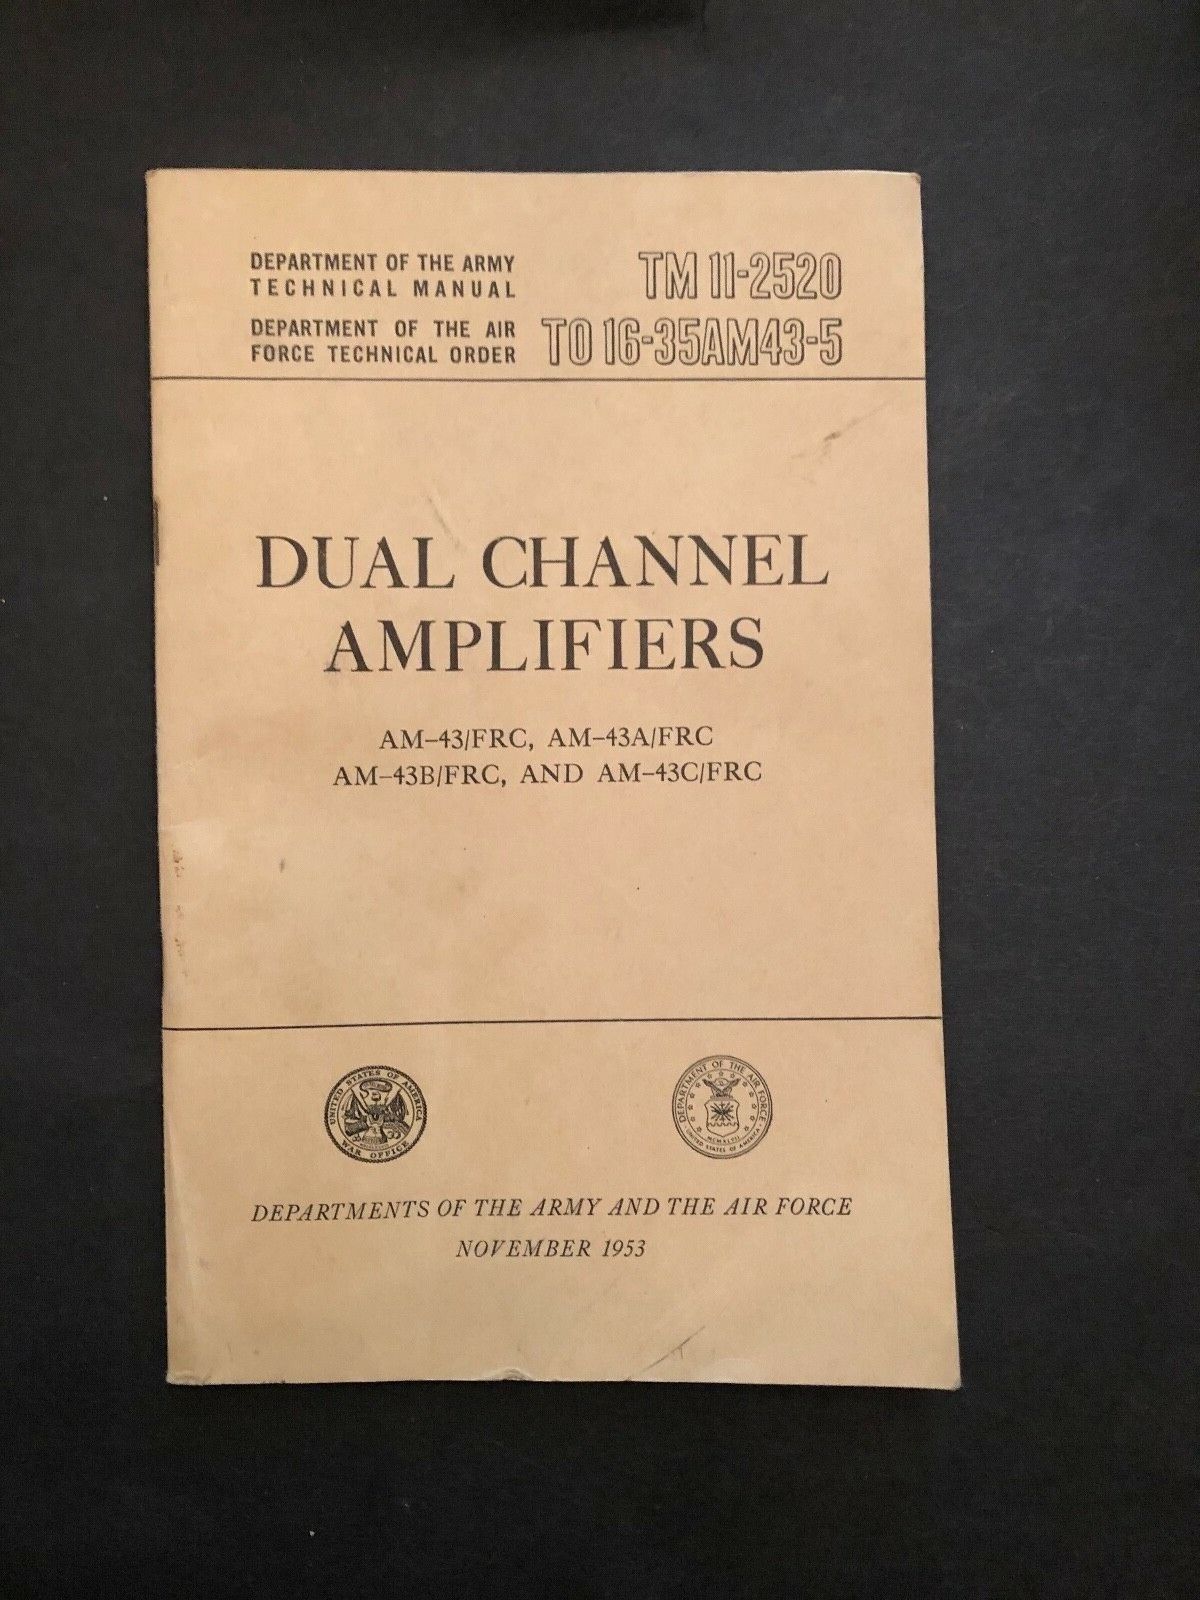 ORIGINAL 1953 Army TM 11-2520 Dual Channel Amplifiers AM-43/FRC, A, B, C 